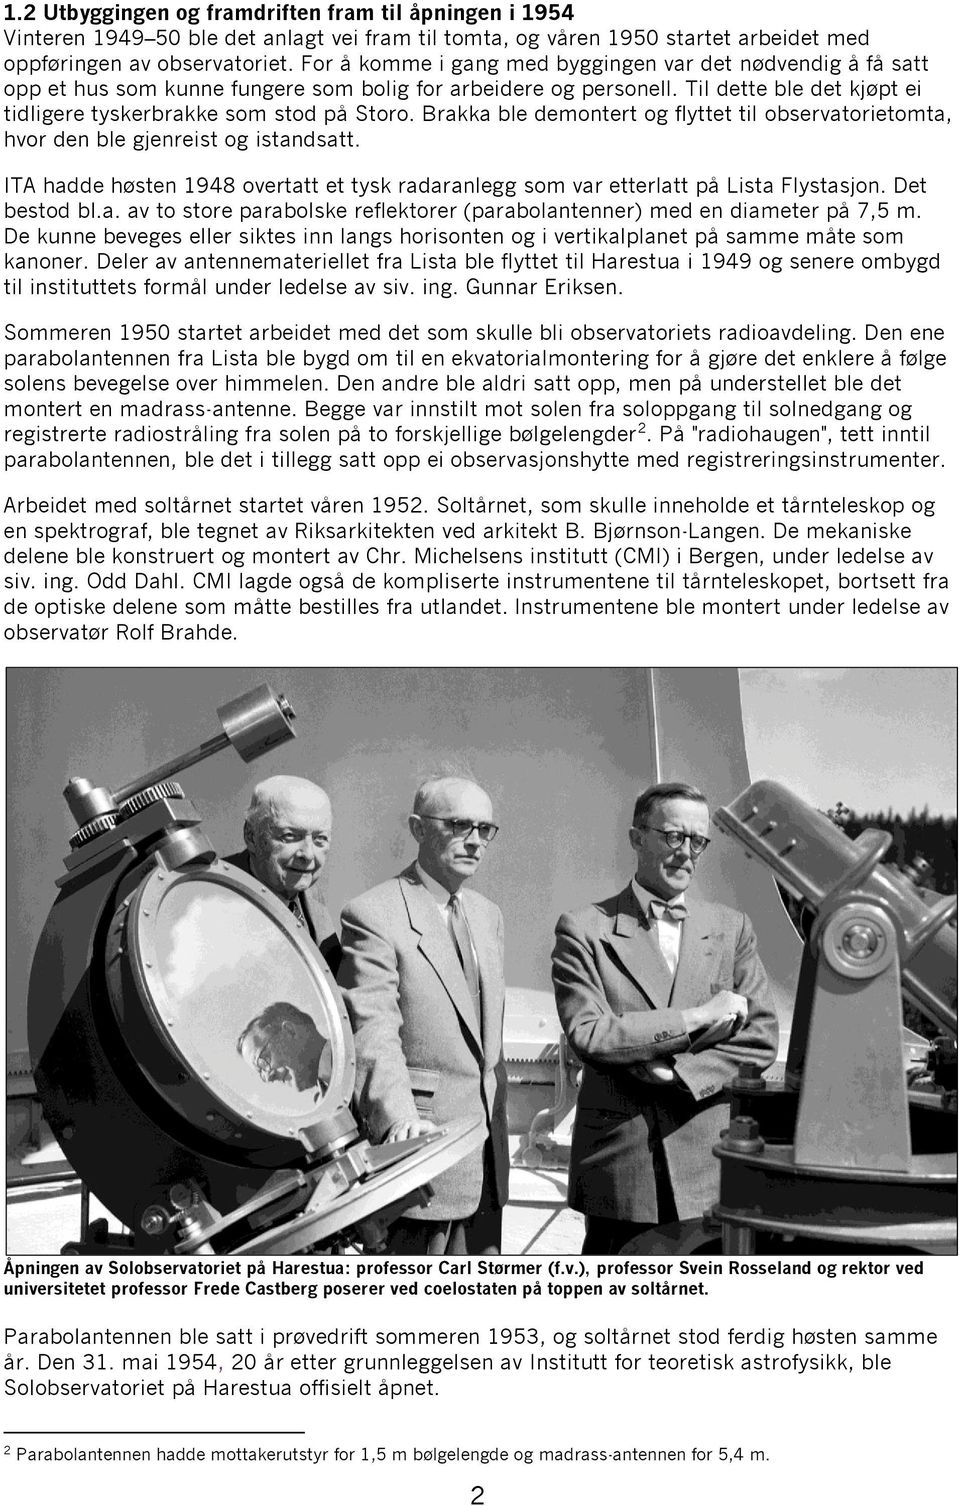 Brakka ble demontert og flyttet til observatorietomta, hvor den ble gjenreist og istandsatt. ITA hadde høsten 1948 overtatt et tysk radaranlegg som var etterlatt på Lista Flystasjon. Det bestod bl.a. av to store parabolske reflektorer (parabolantenner) med en diameter på 7,5 m.